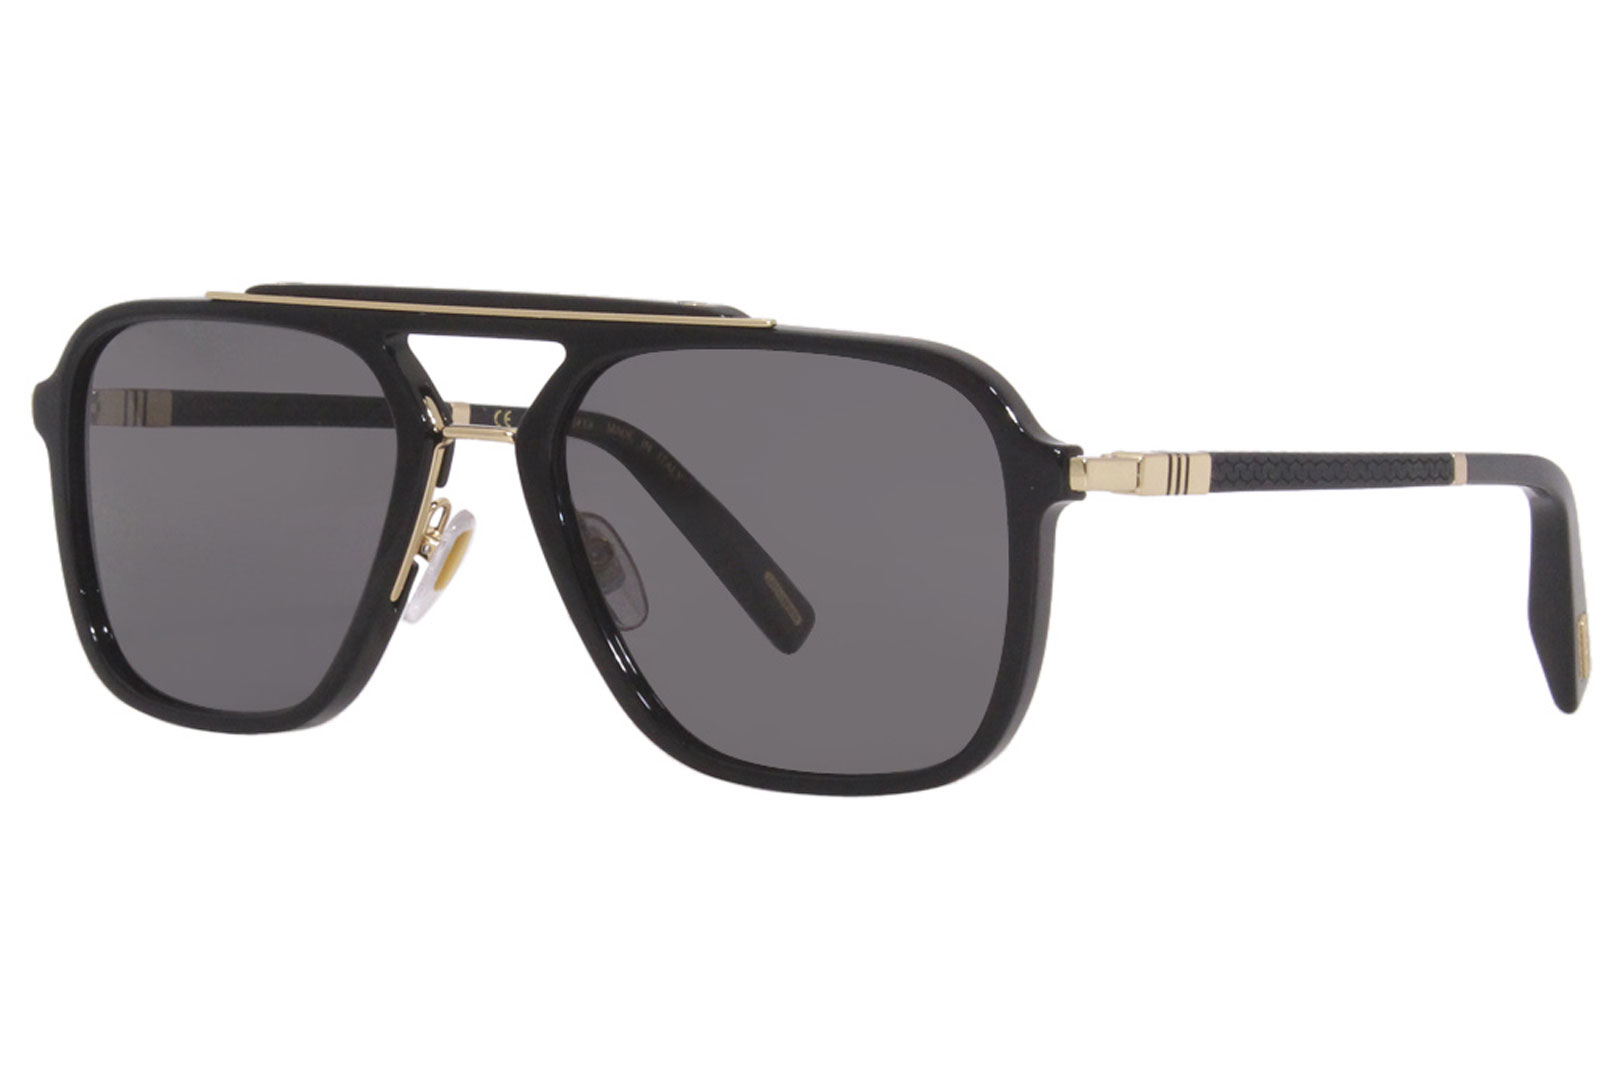 Chopard Sunglasses Men's SCH291 700P Black 57-19-145 | EyeSpecs.com